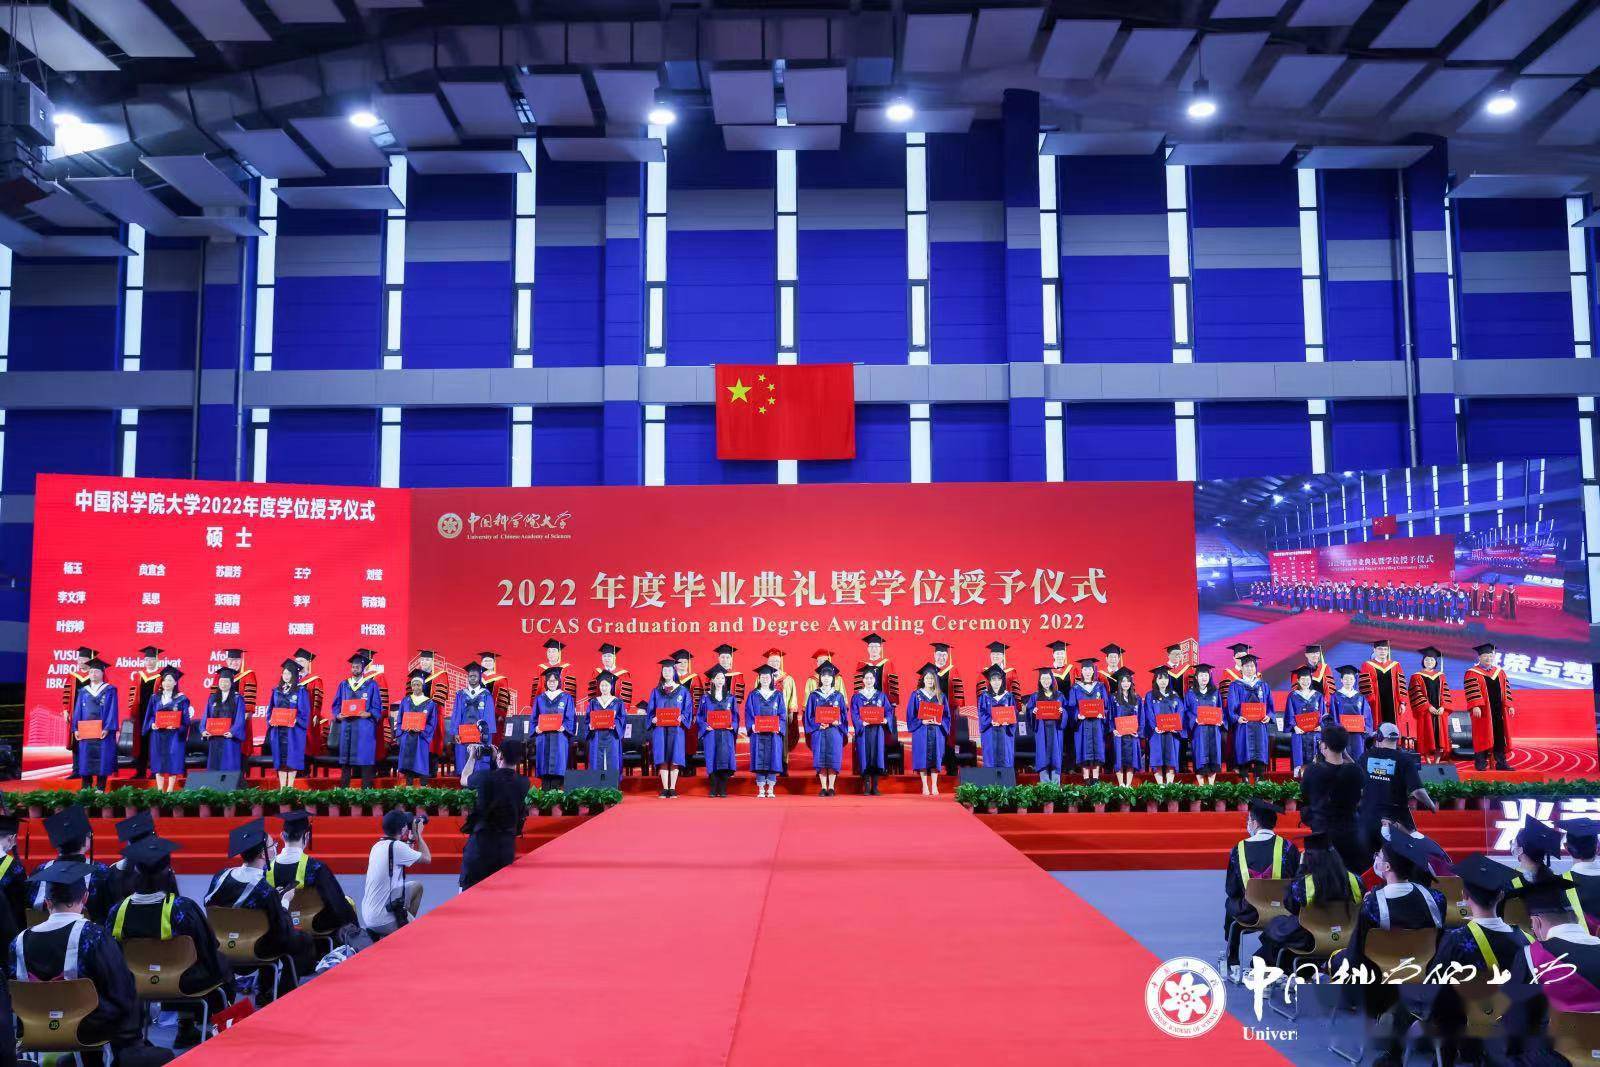 中国科学院大学(以下简称国科大)2022年度毕业典礼暨学位授予仪式在